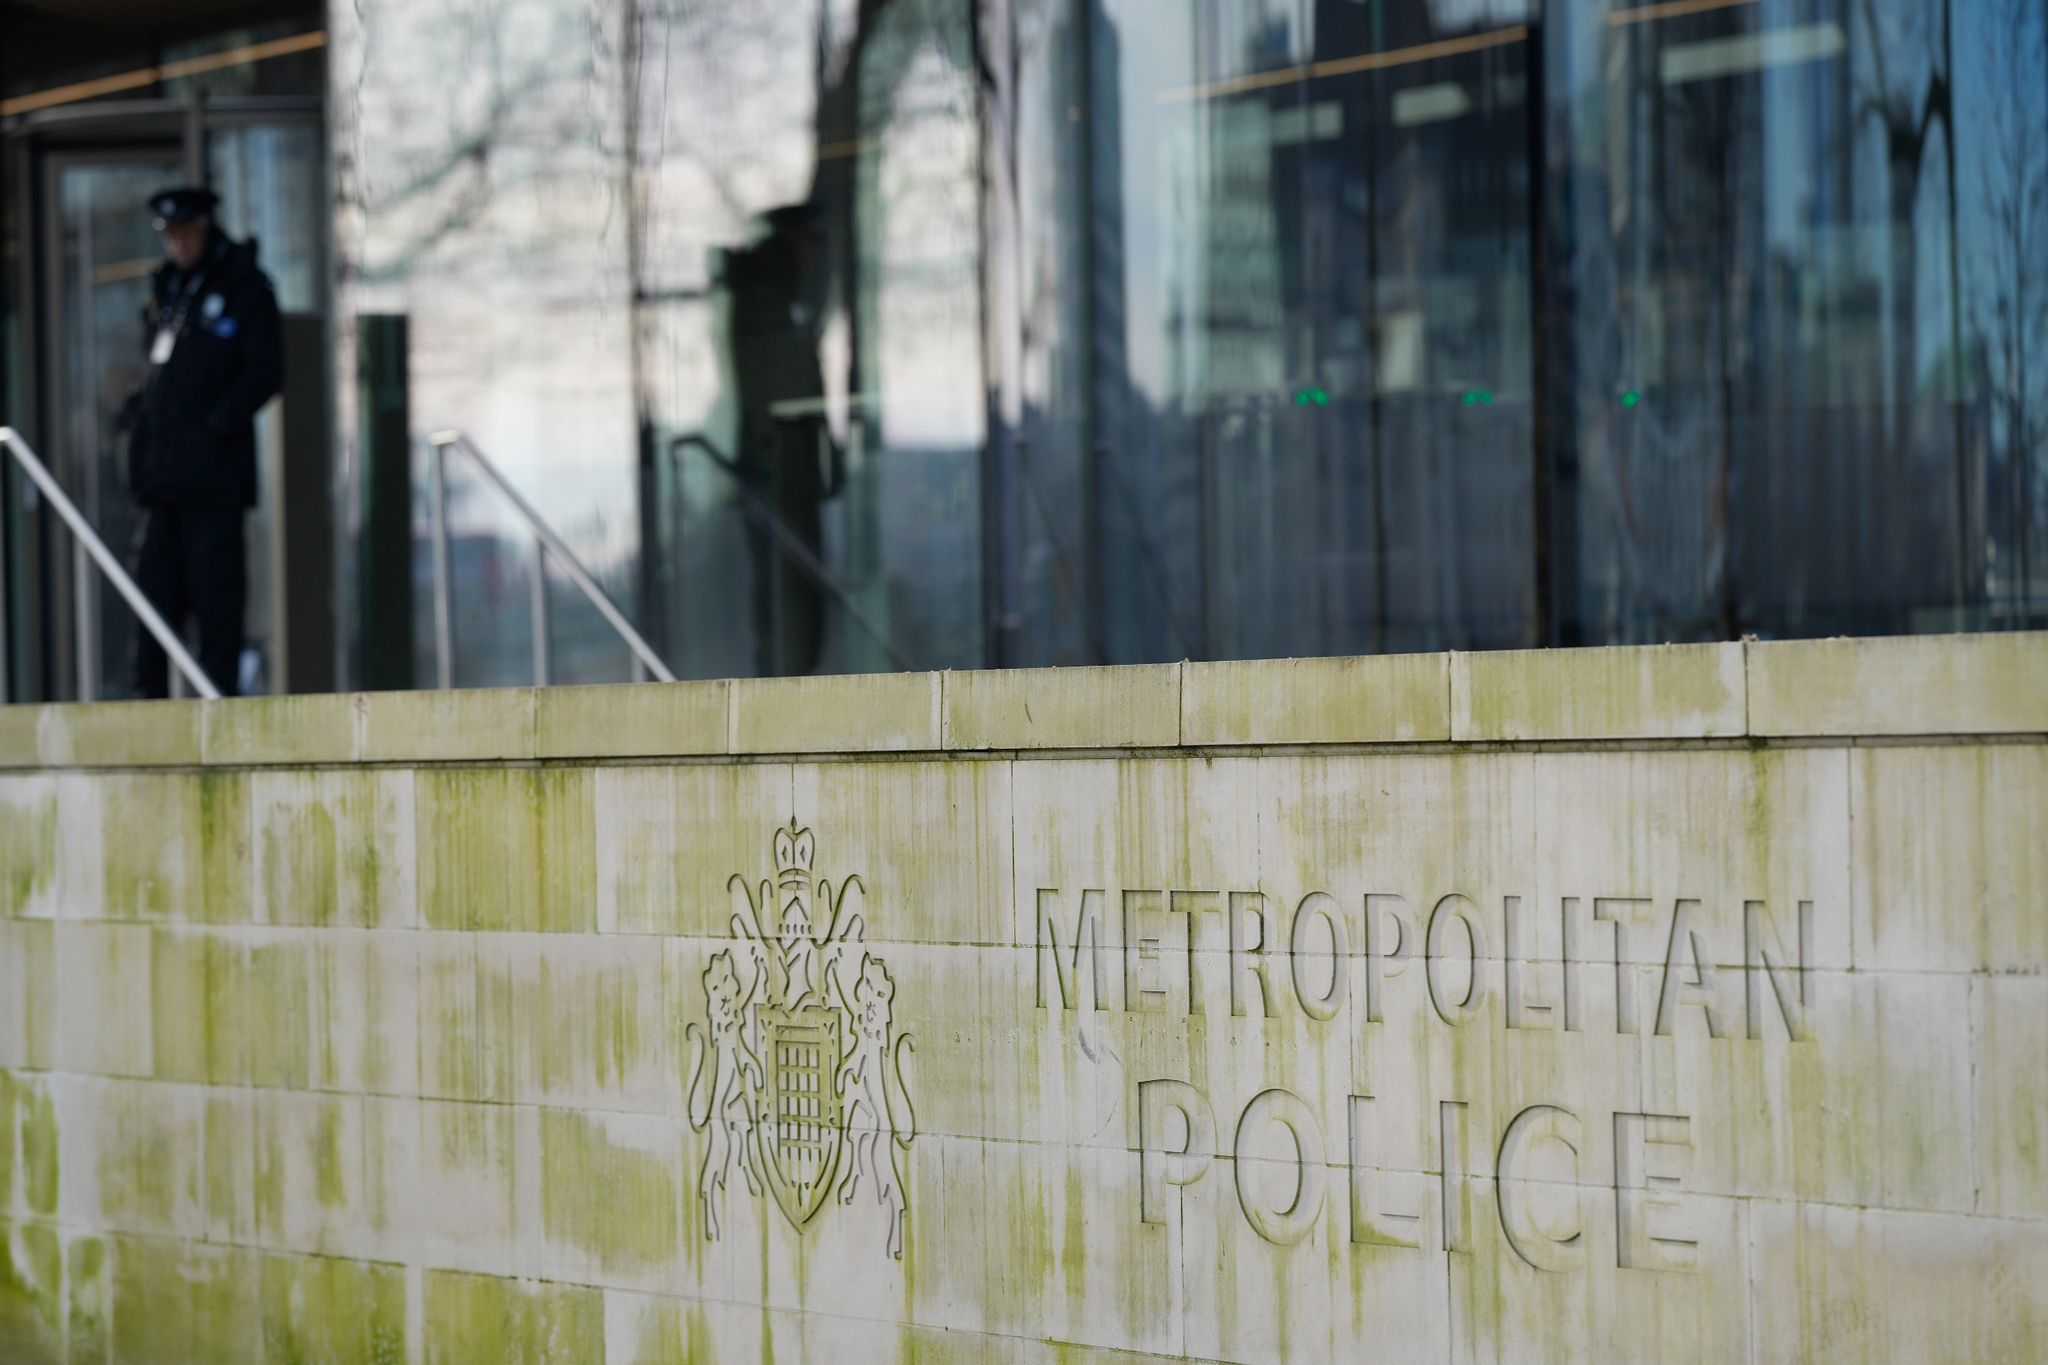 Scotland Yard übersieht womöglich Serienmörder